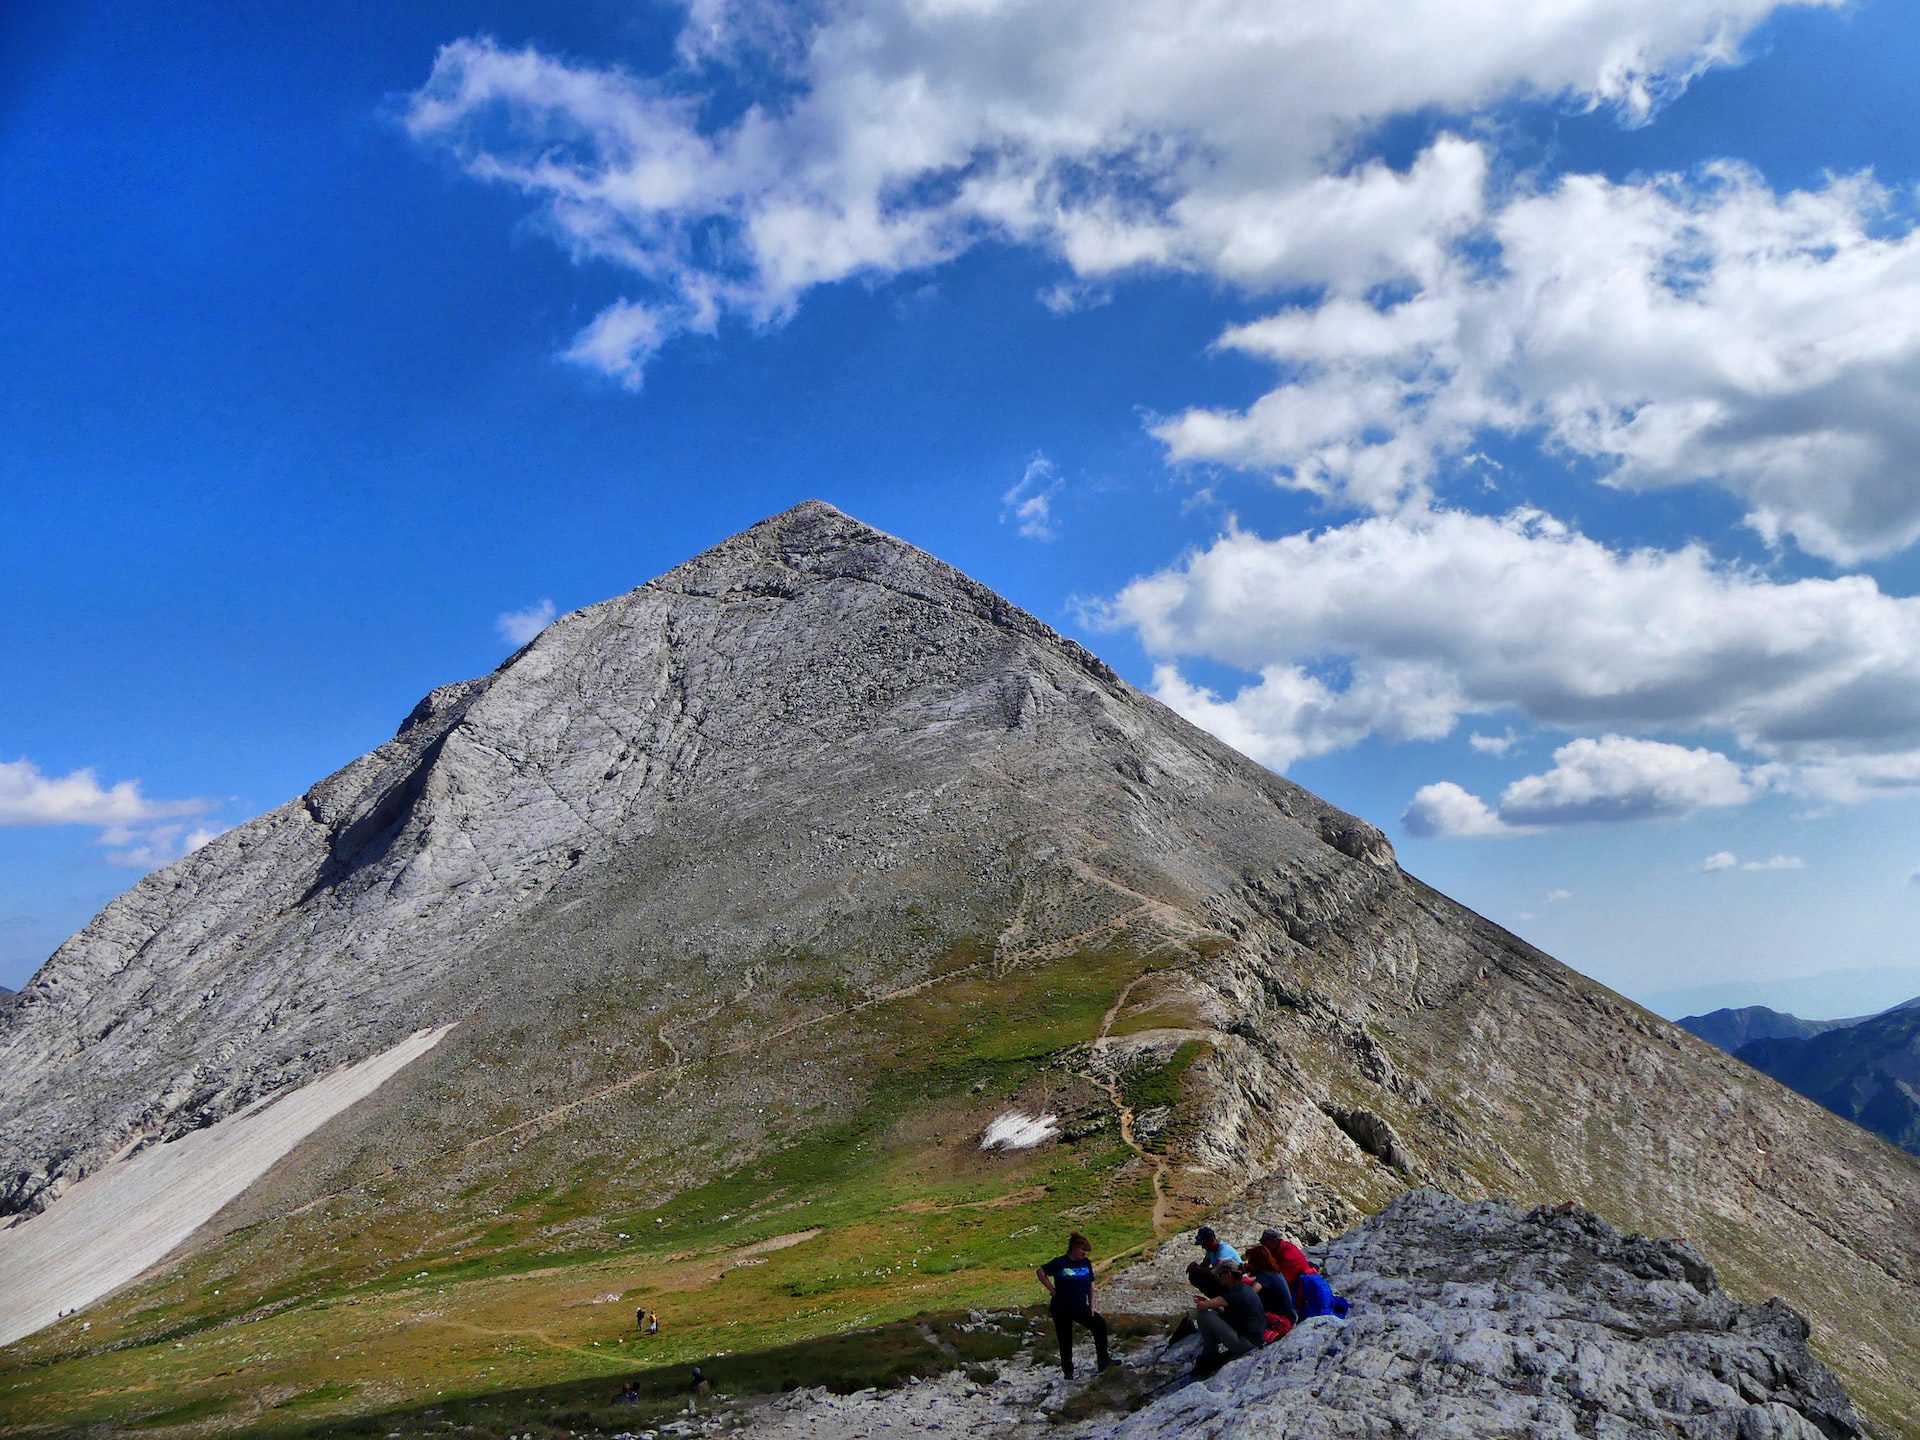 Bansko: Guided Mountain Tour to Vihren Mountain